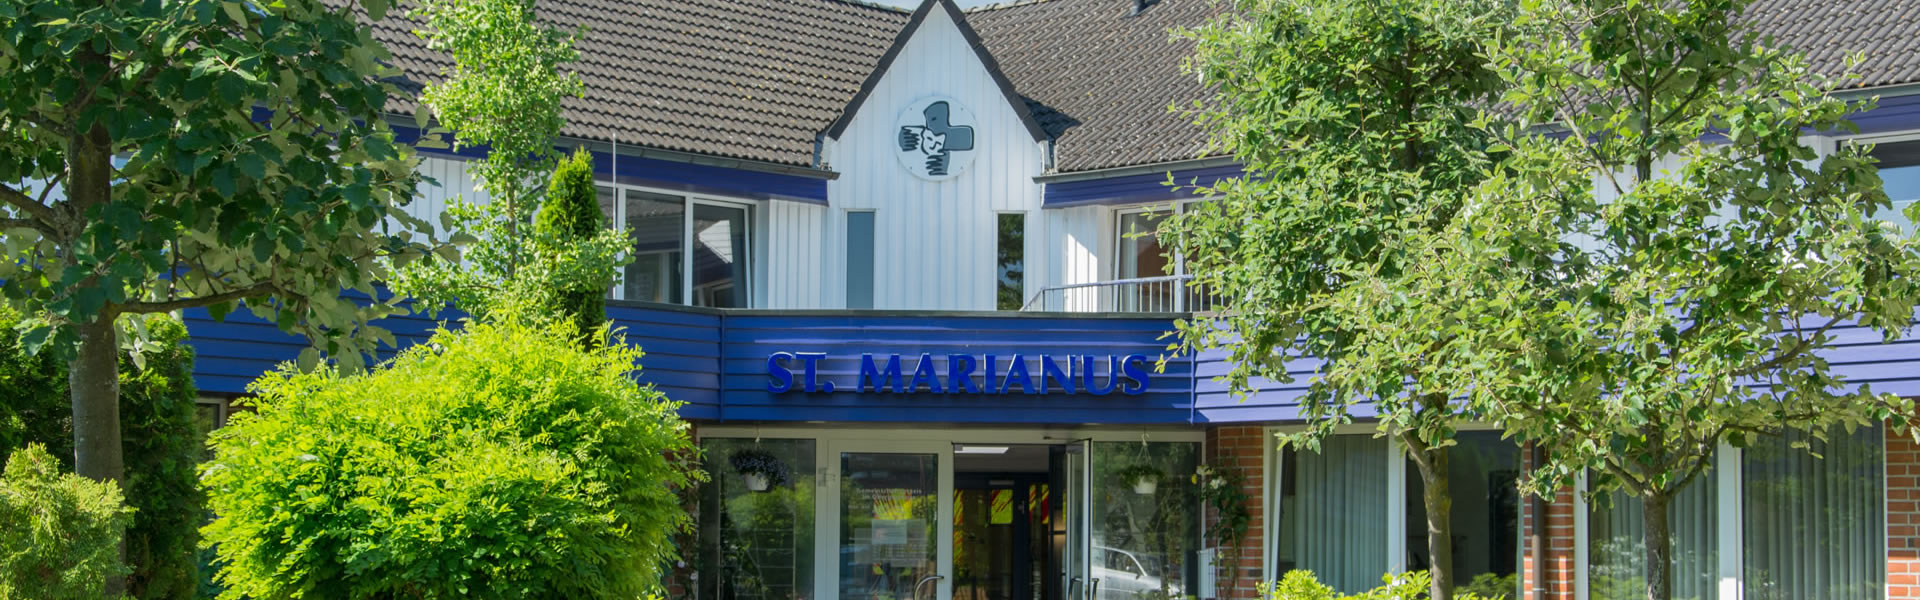 Palliativzentrum St. Marianus